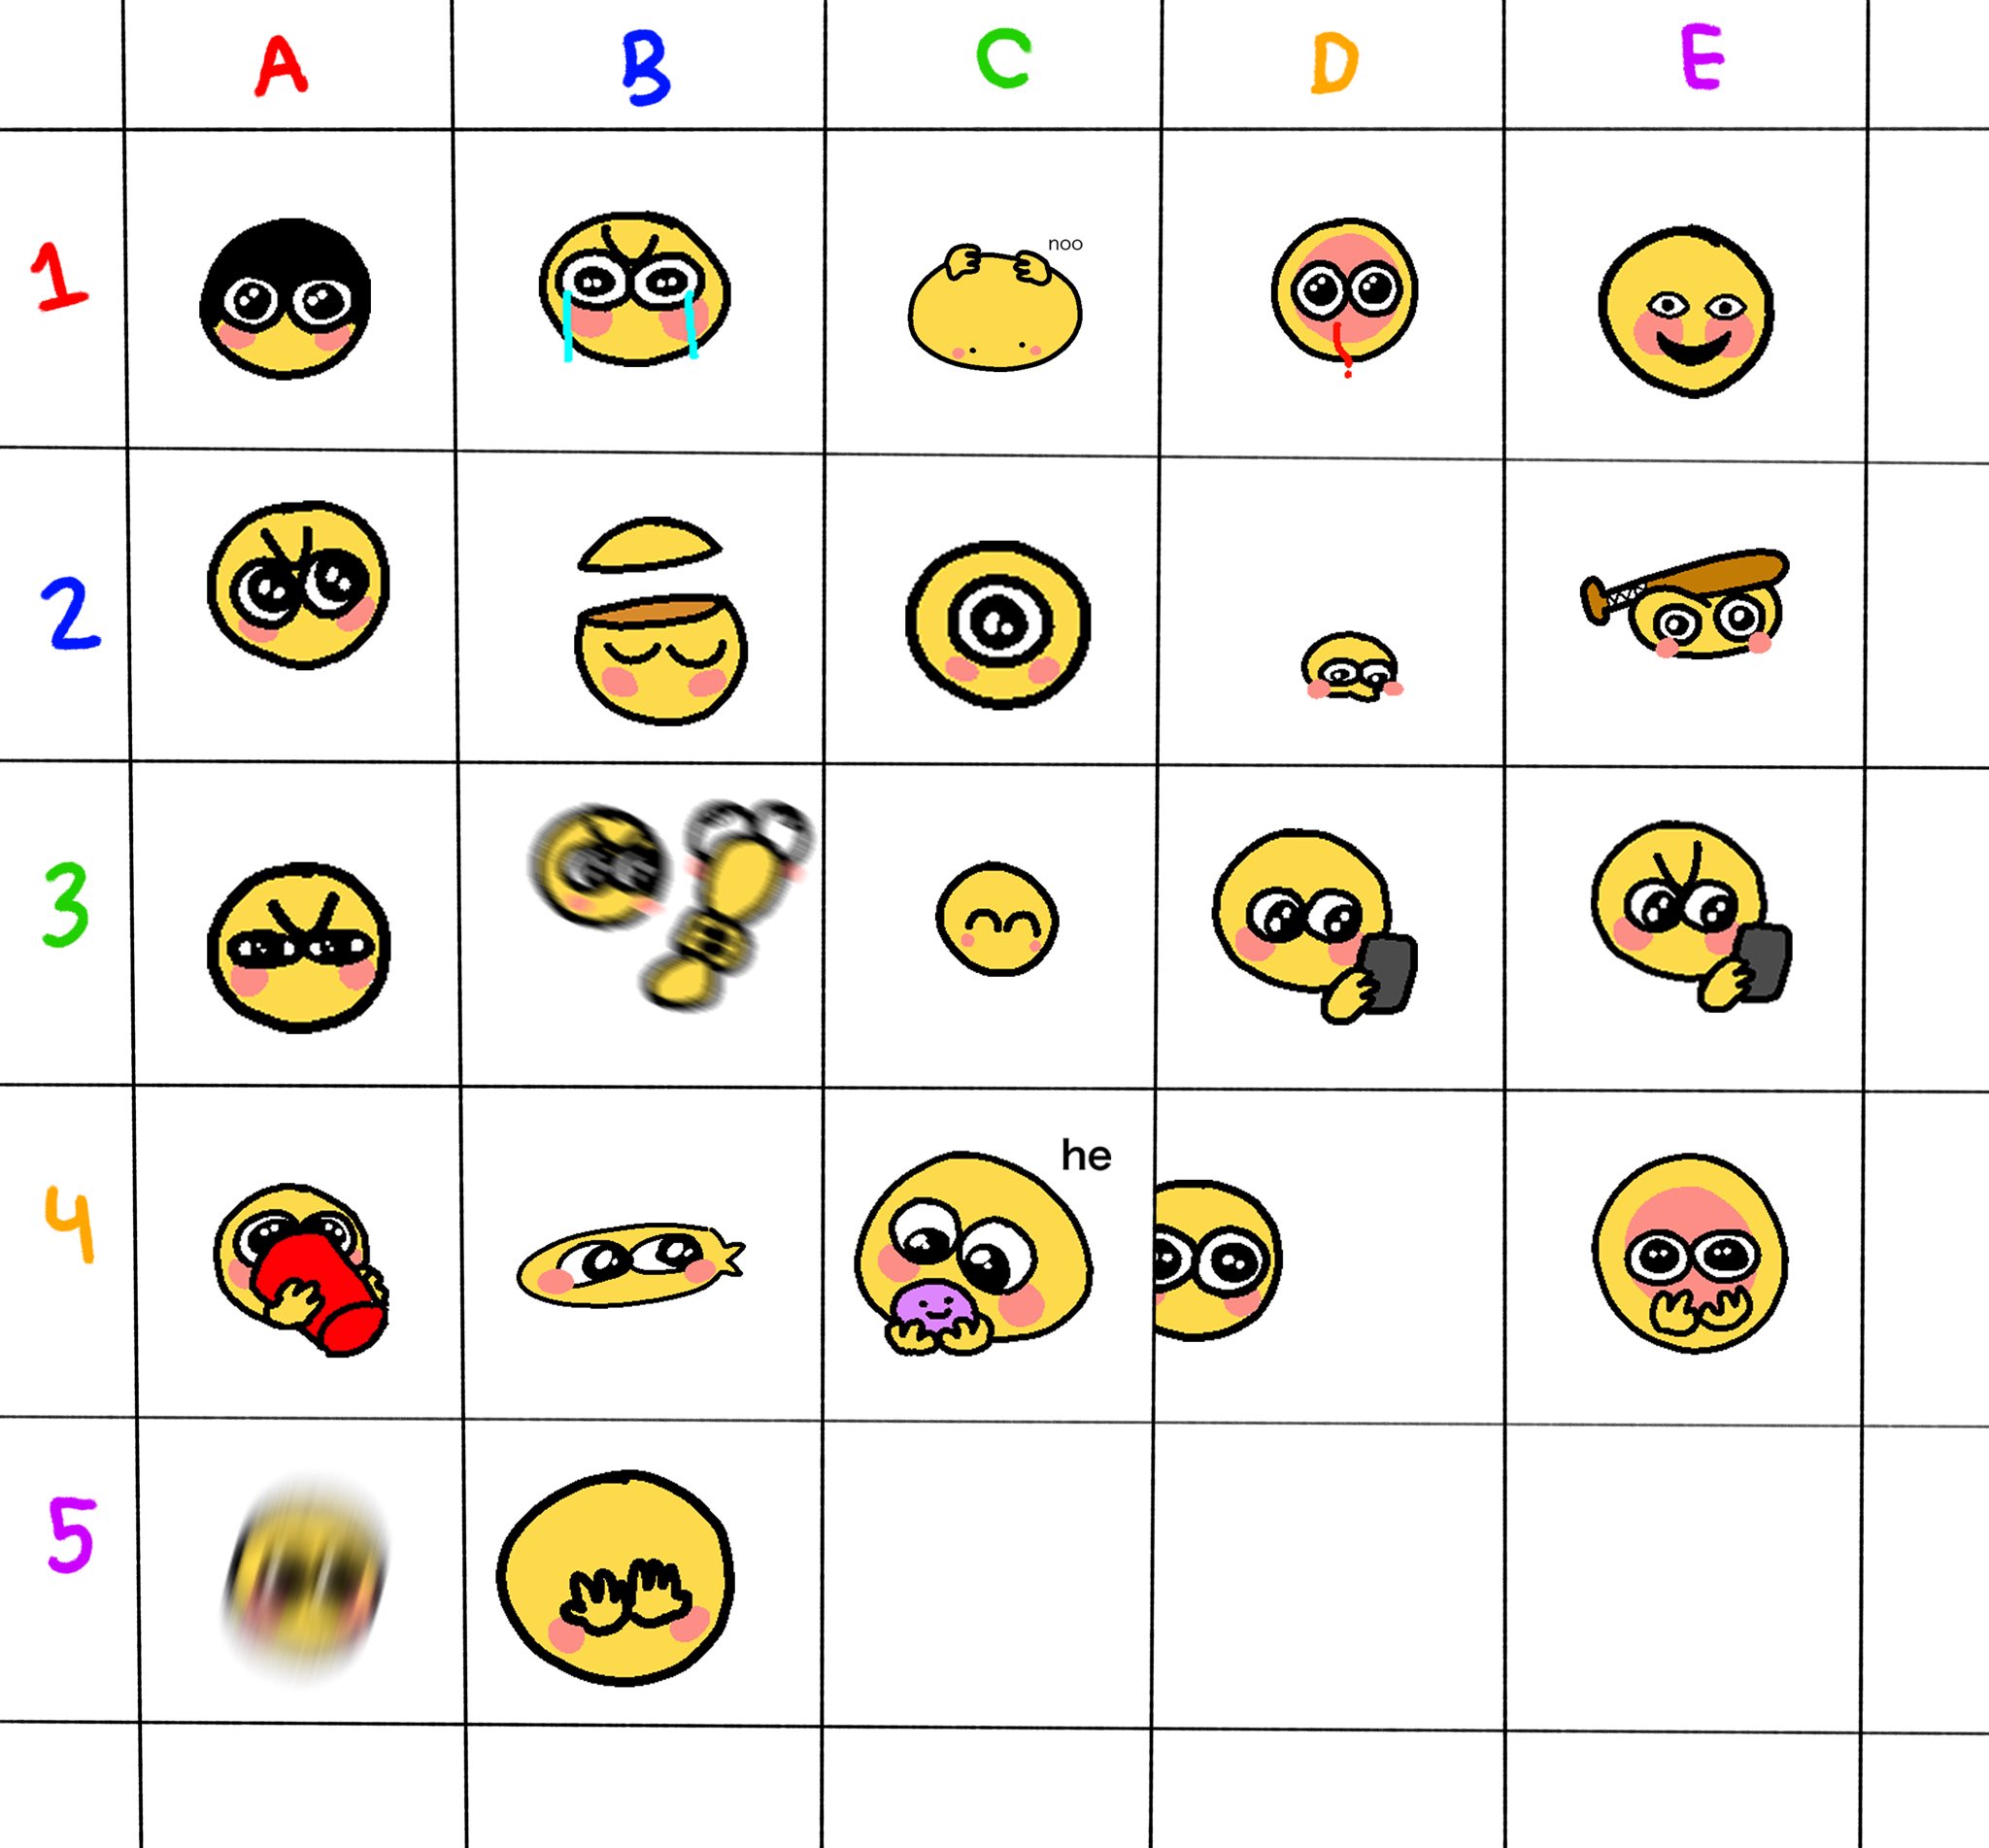 Powercry x Stressed Emoj by VictMangle, Cursed Emojis